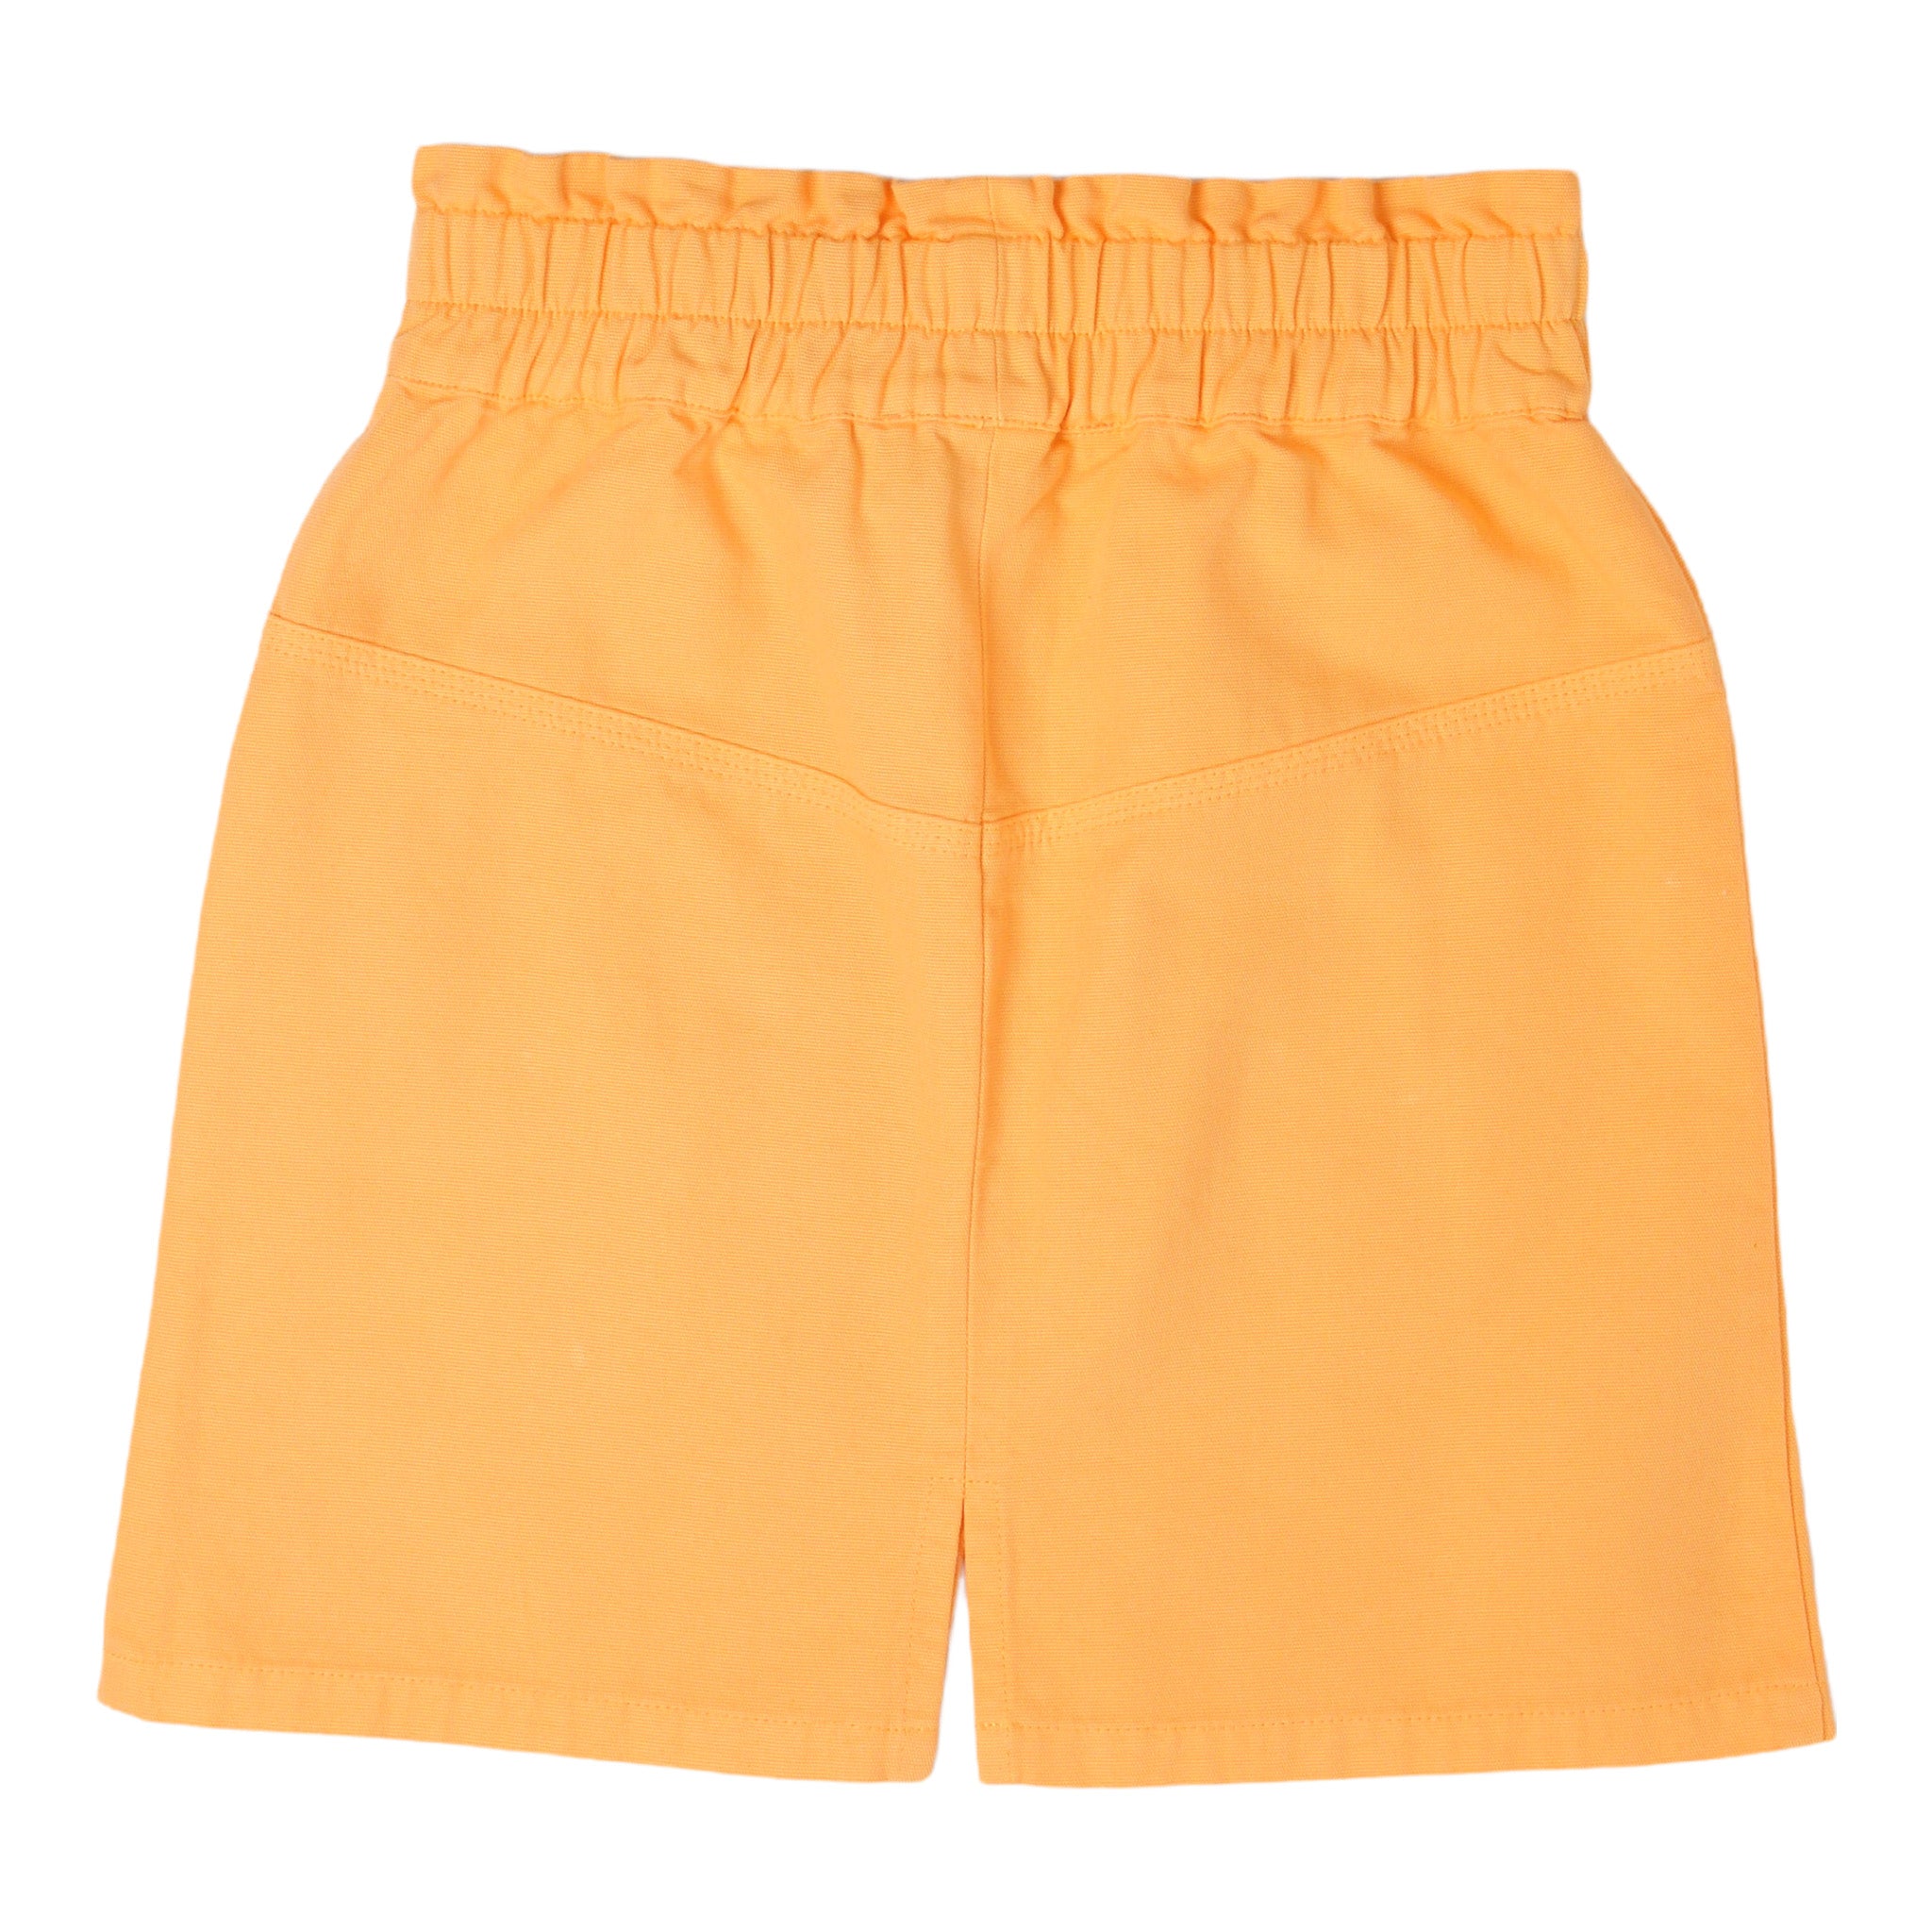 Girls Orange Yellow Cotton Skirt